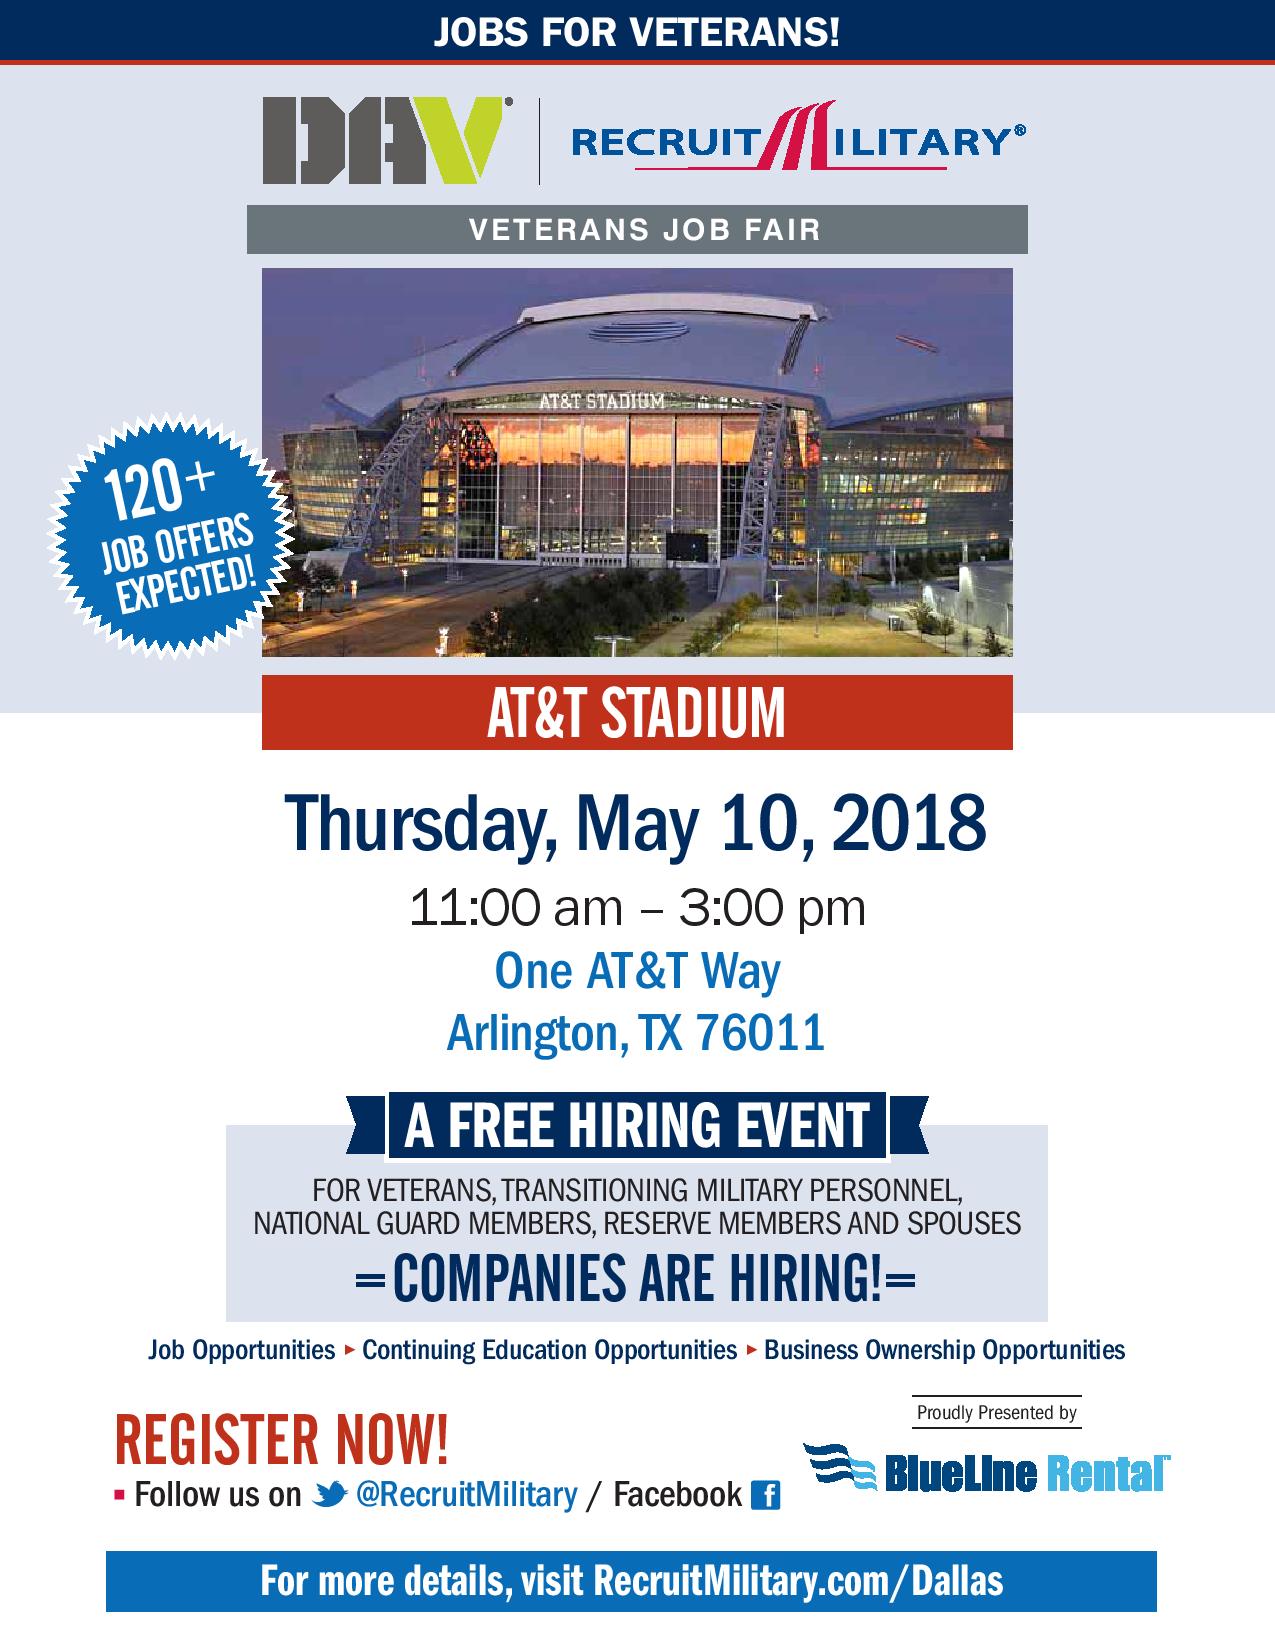 DAV/RecruitMilitary Veterans Job Fair May 10, 2018